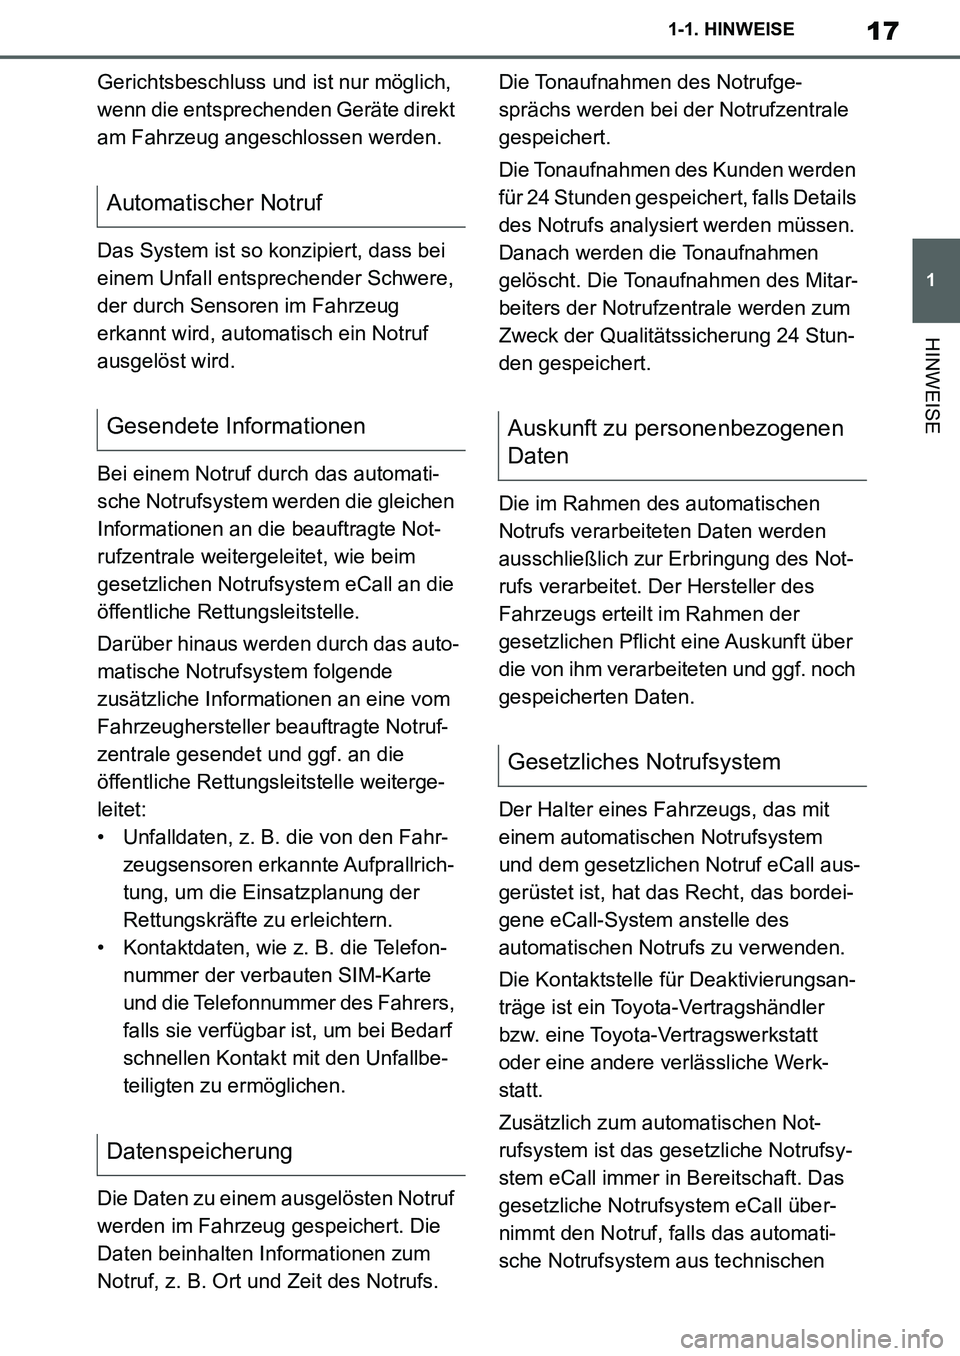 TOYOTA SUPRA 2020  Betriebsanleitungen (in German) 17
1
Supra Owners Manual_EM
1-1. HINWEISE
HINWEISE
Gerichtsbeschluss und ist nur möglich, 
wenn die entsprechenden Geräte direkt 
am Fahrzeug angeschlossen werden.
Das System ist so konzipiert, das